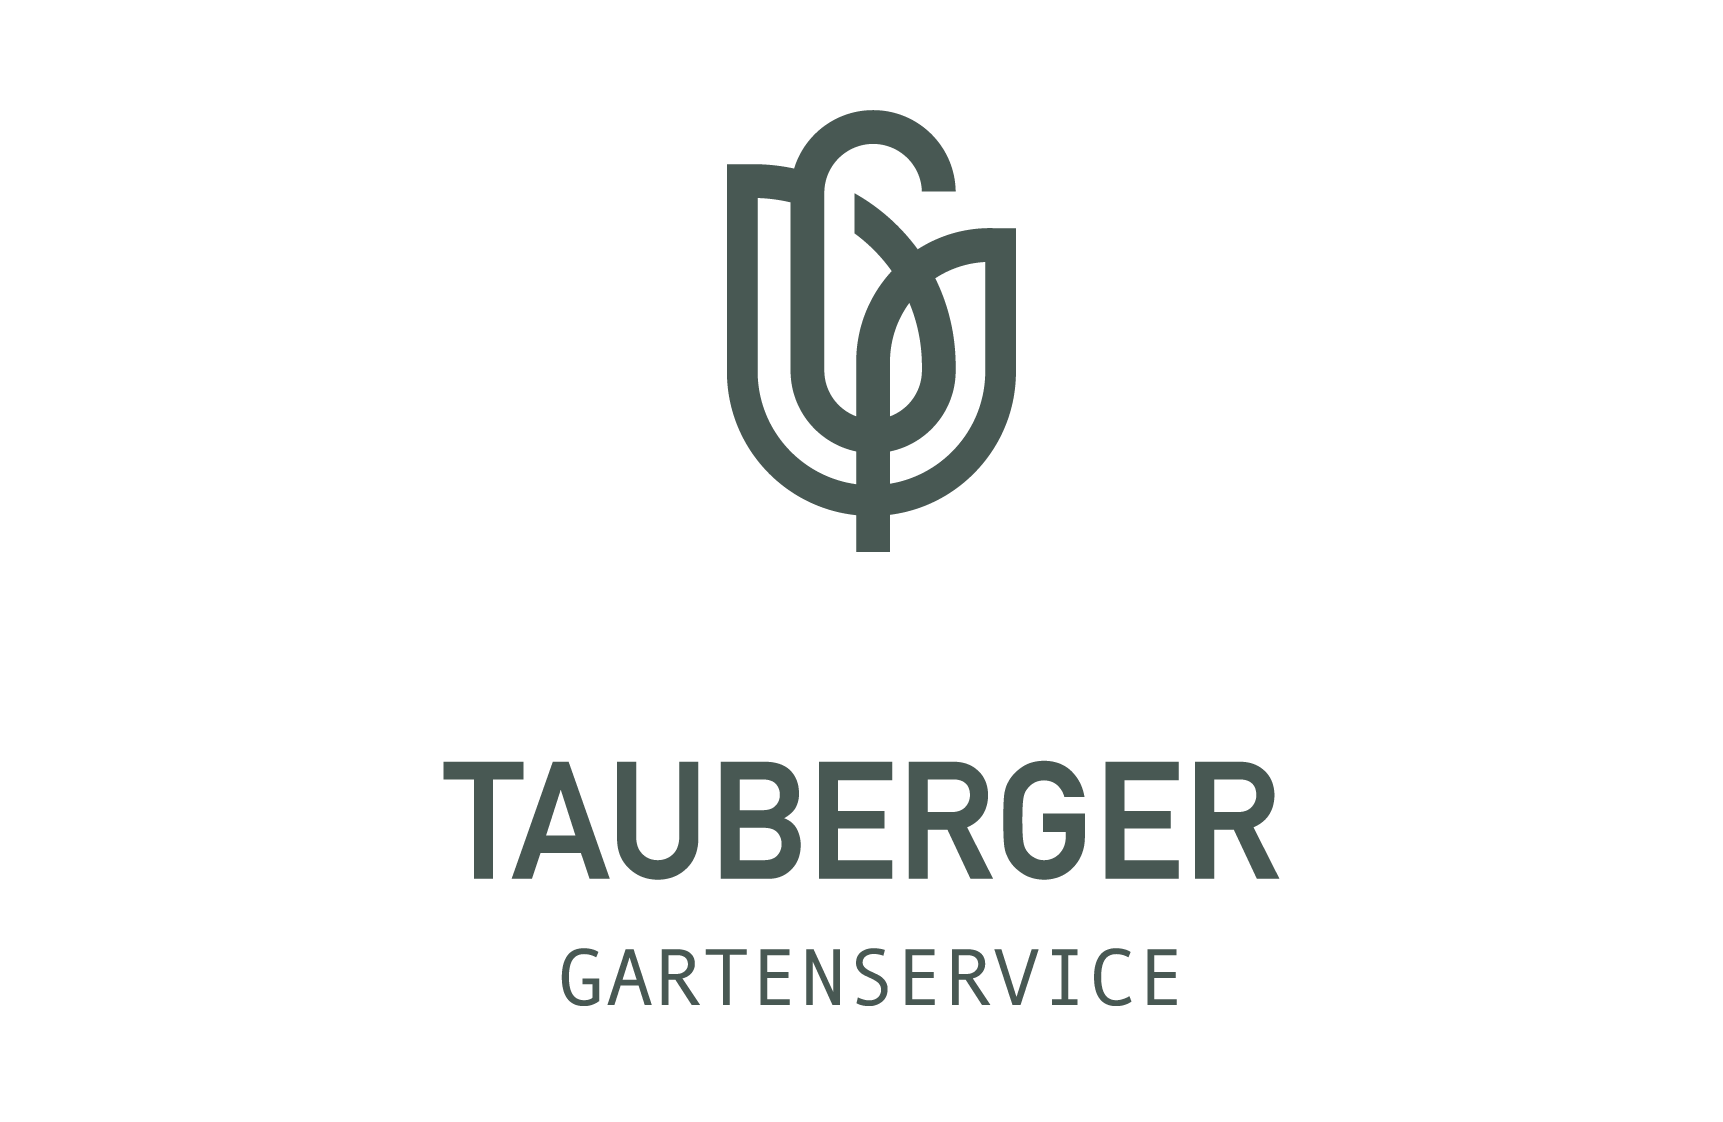 TAUBERGER GARTENSERVICE